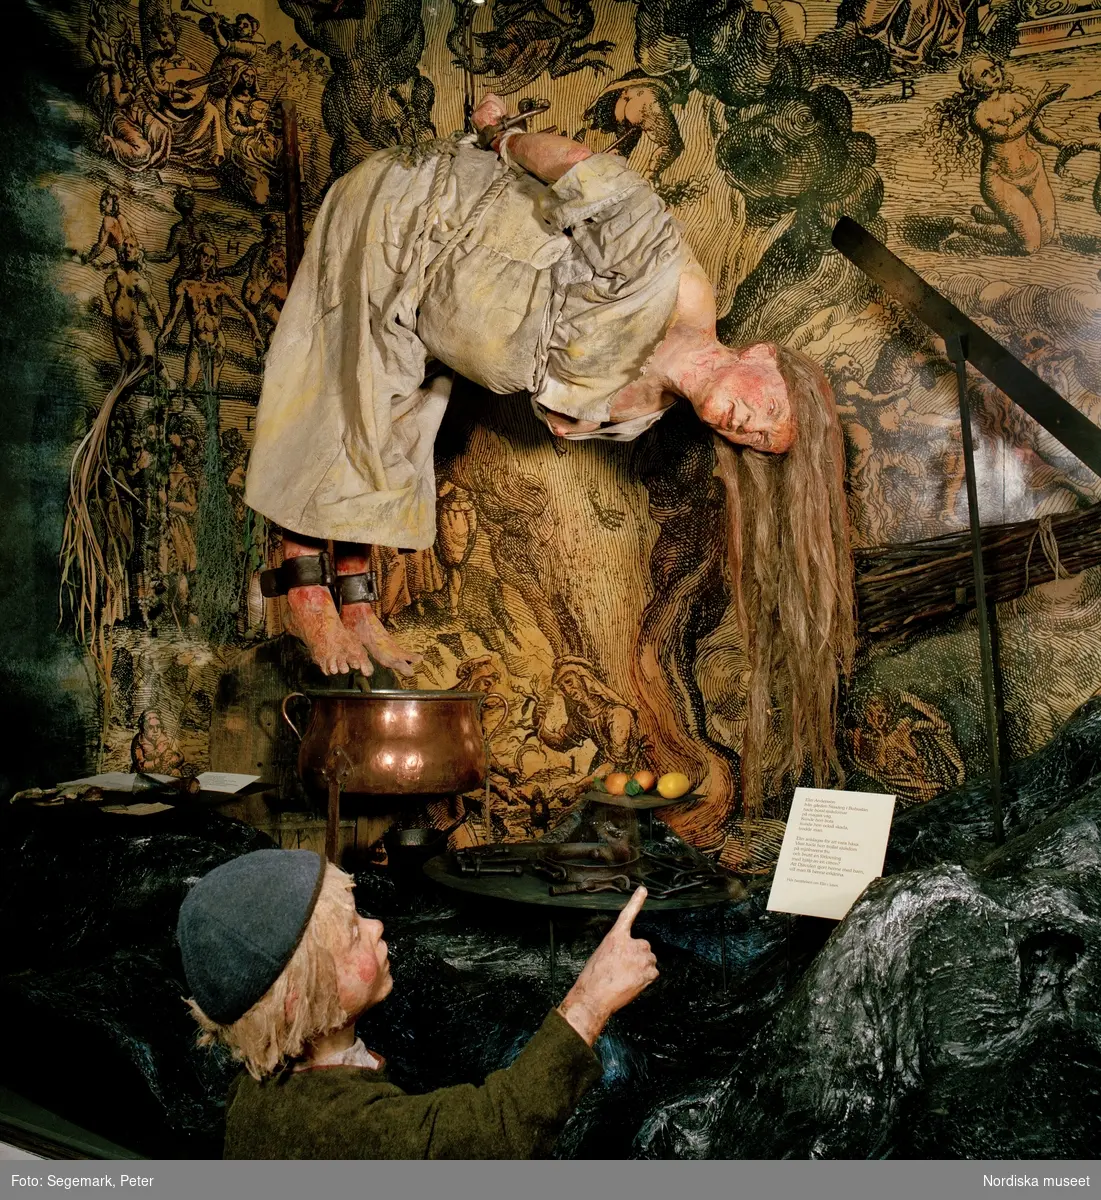 Bild från Nordiska museets utställning Traditioner. Processer mot kvinnor utpekade som häxor under 1600-talet.